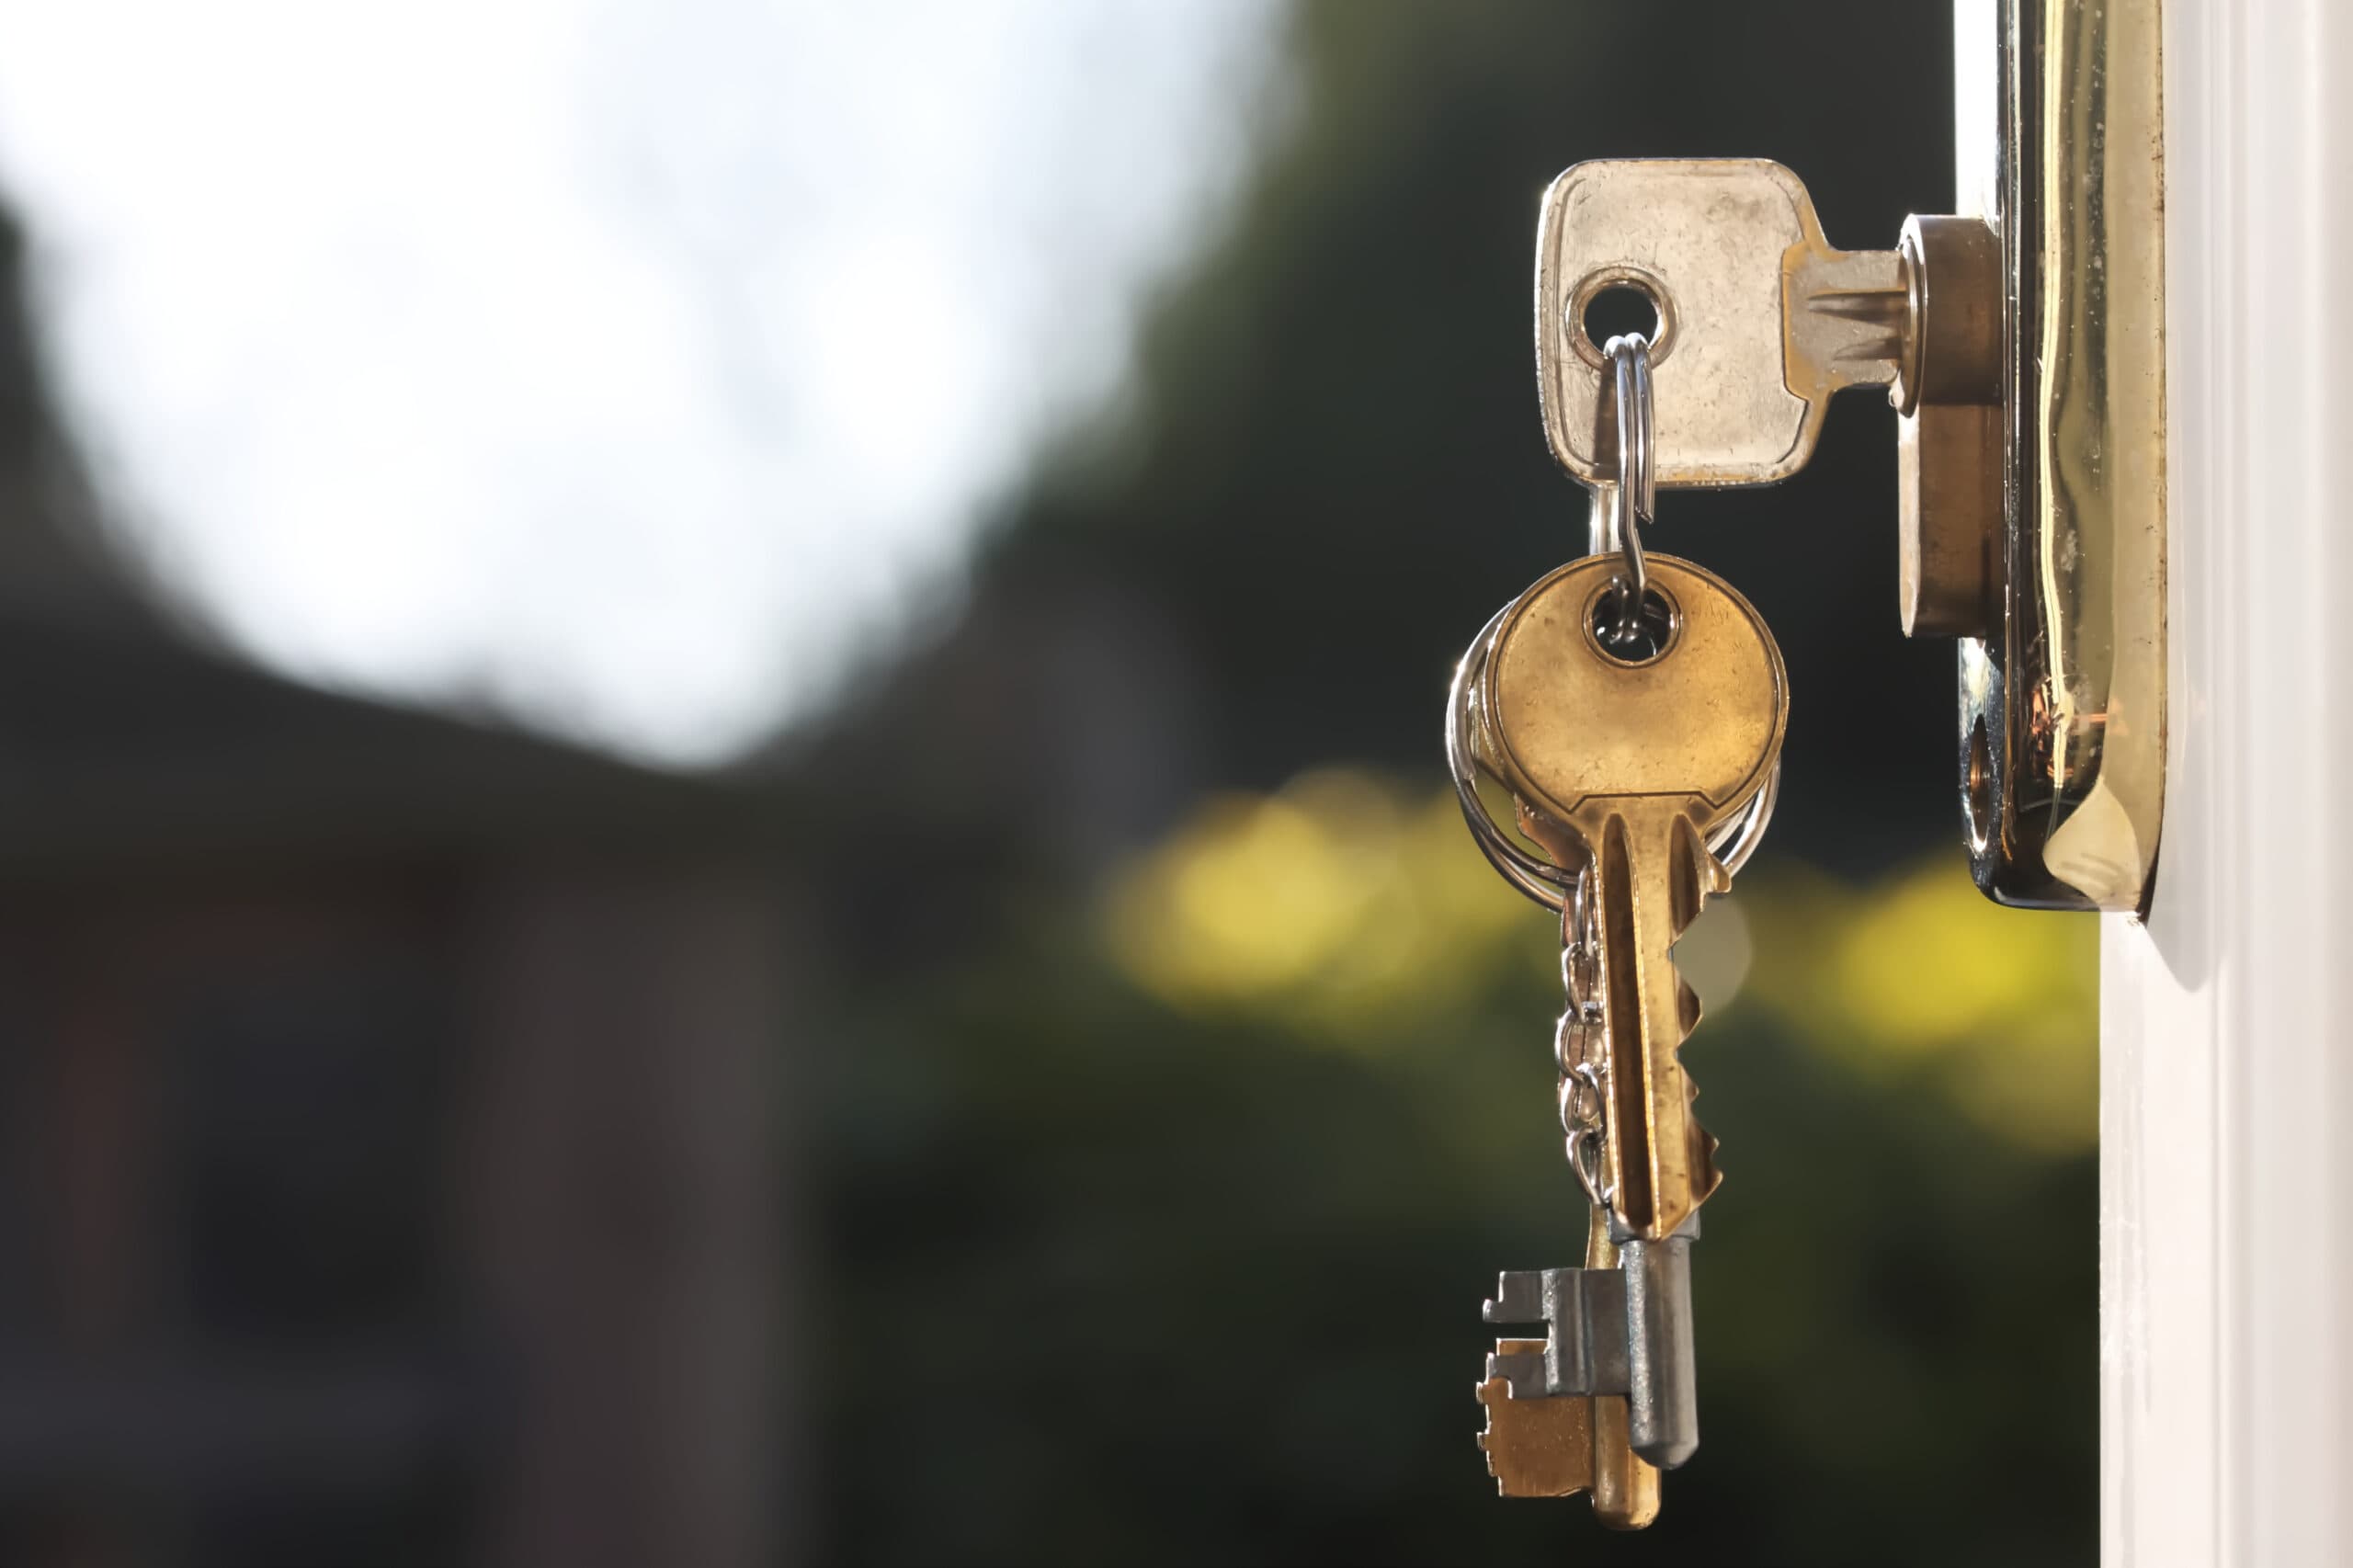 House keys in lock of a door viewed outside horizontal